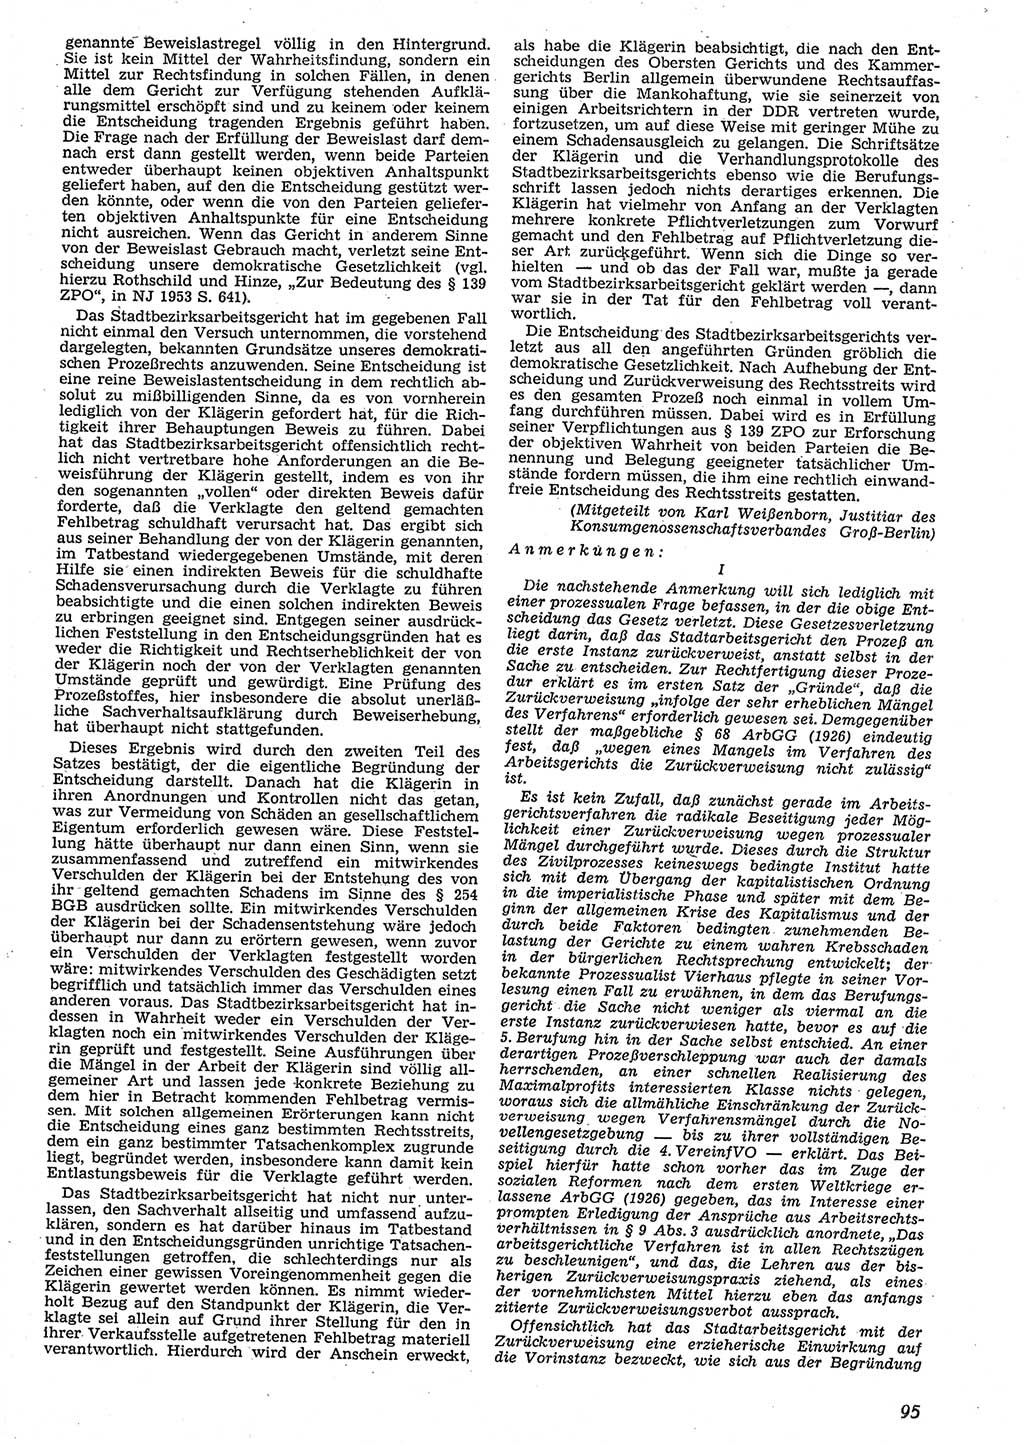 Neue Justiz (NJ), Zeitschrift für Recht und Rechtswissenschaft [Deutsche Demokratische Republik (DDR)], 10. Jahrgang 1956, Seite 95 (NJ DDR 1956, S. 95)